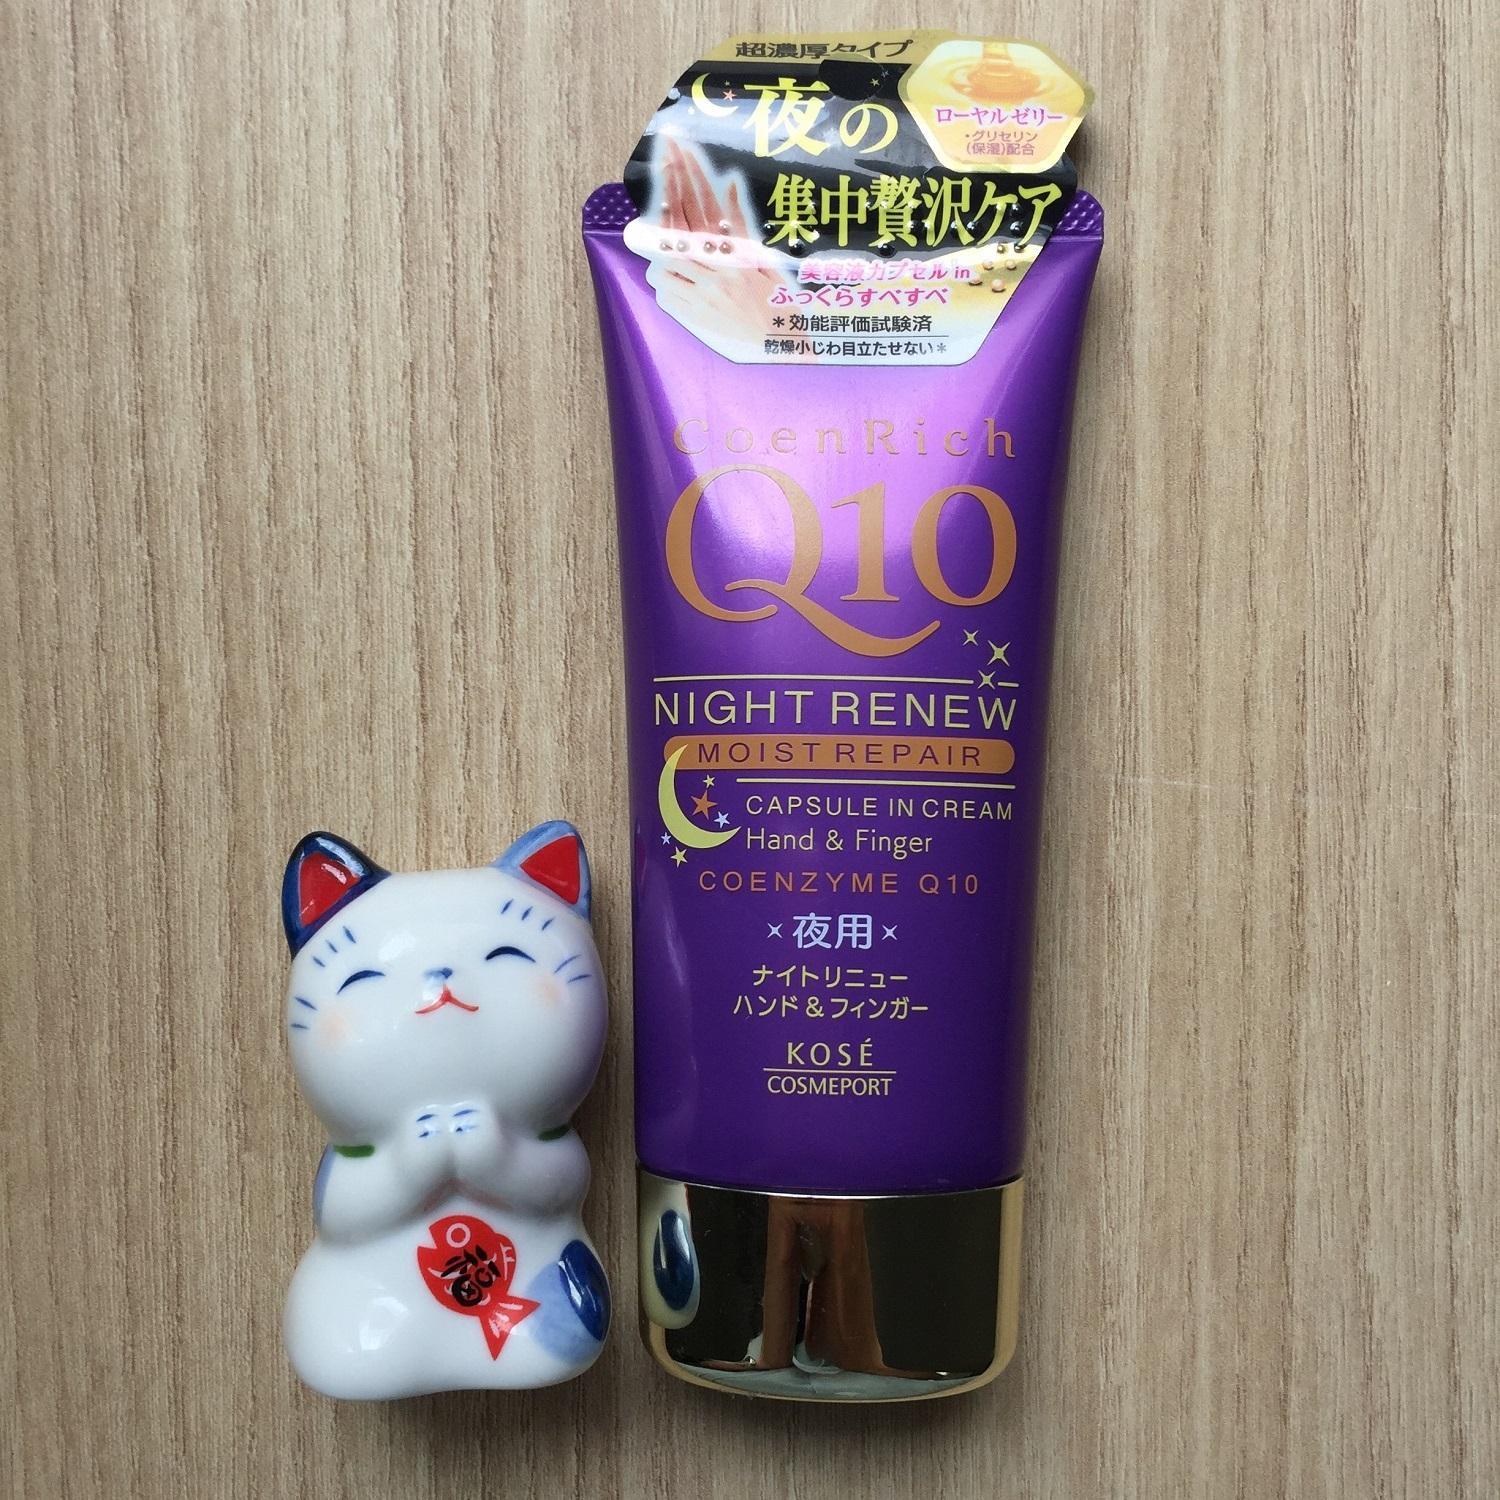 Kem dưỡng da tay Kose Coenrich Q10 Whitening Medicated Hand Cream dành cho buổi tối (ảnh: internet)